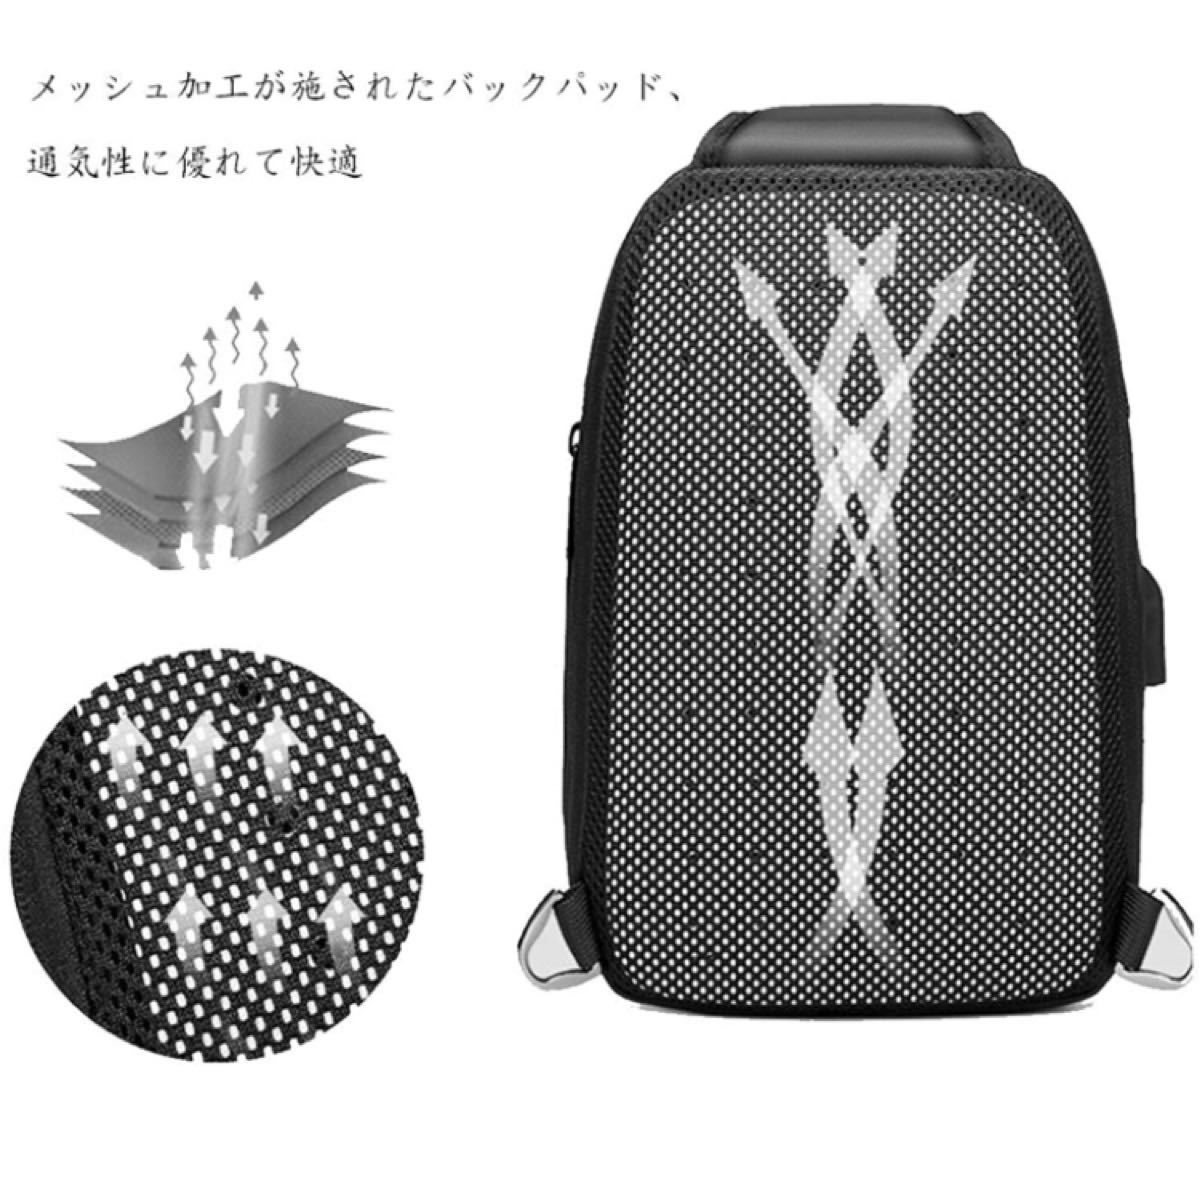 【本日限定セール】ZARA系 海外ブランド ボディバッグ 大容量 USBポート 軽量 メンズ ワンショルダーバッグ 防水 黒 